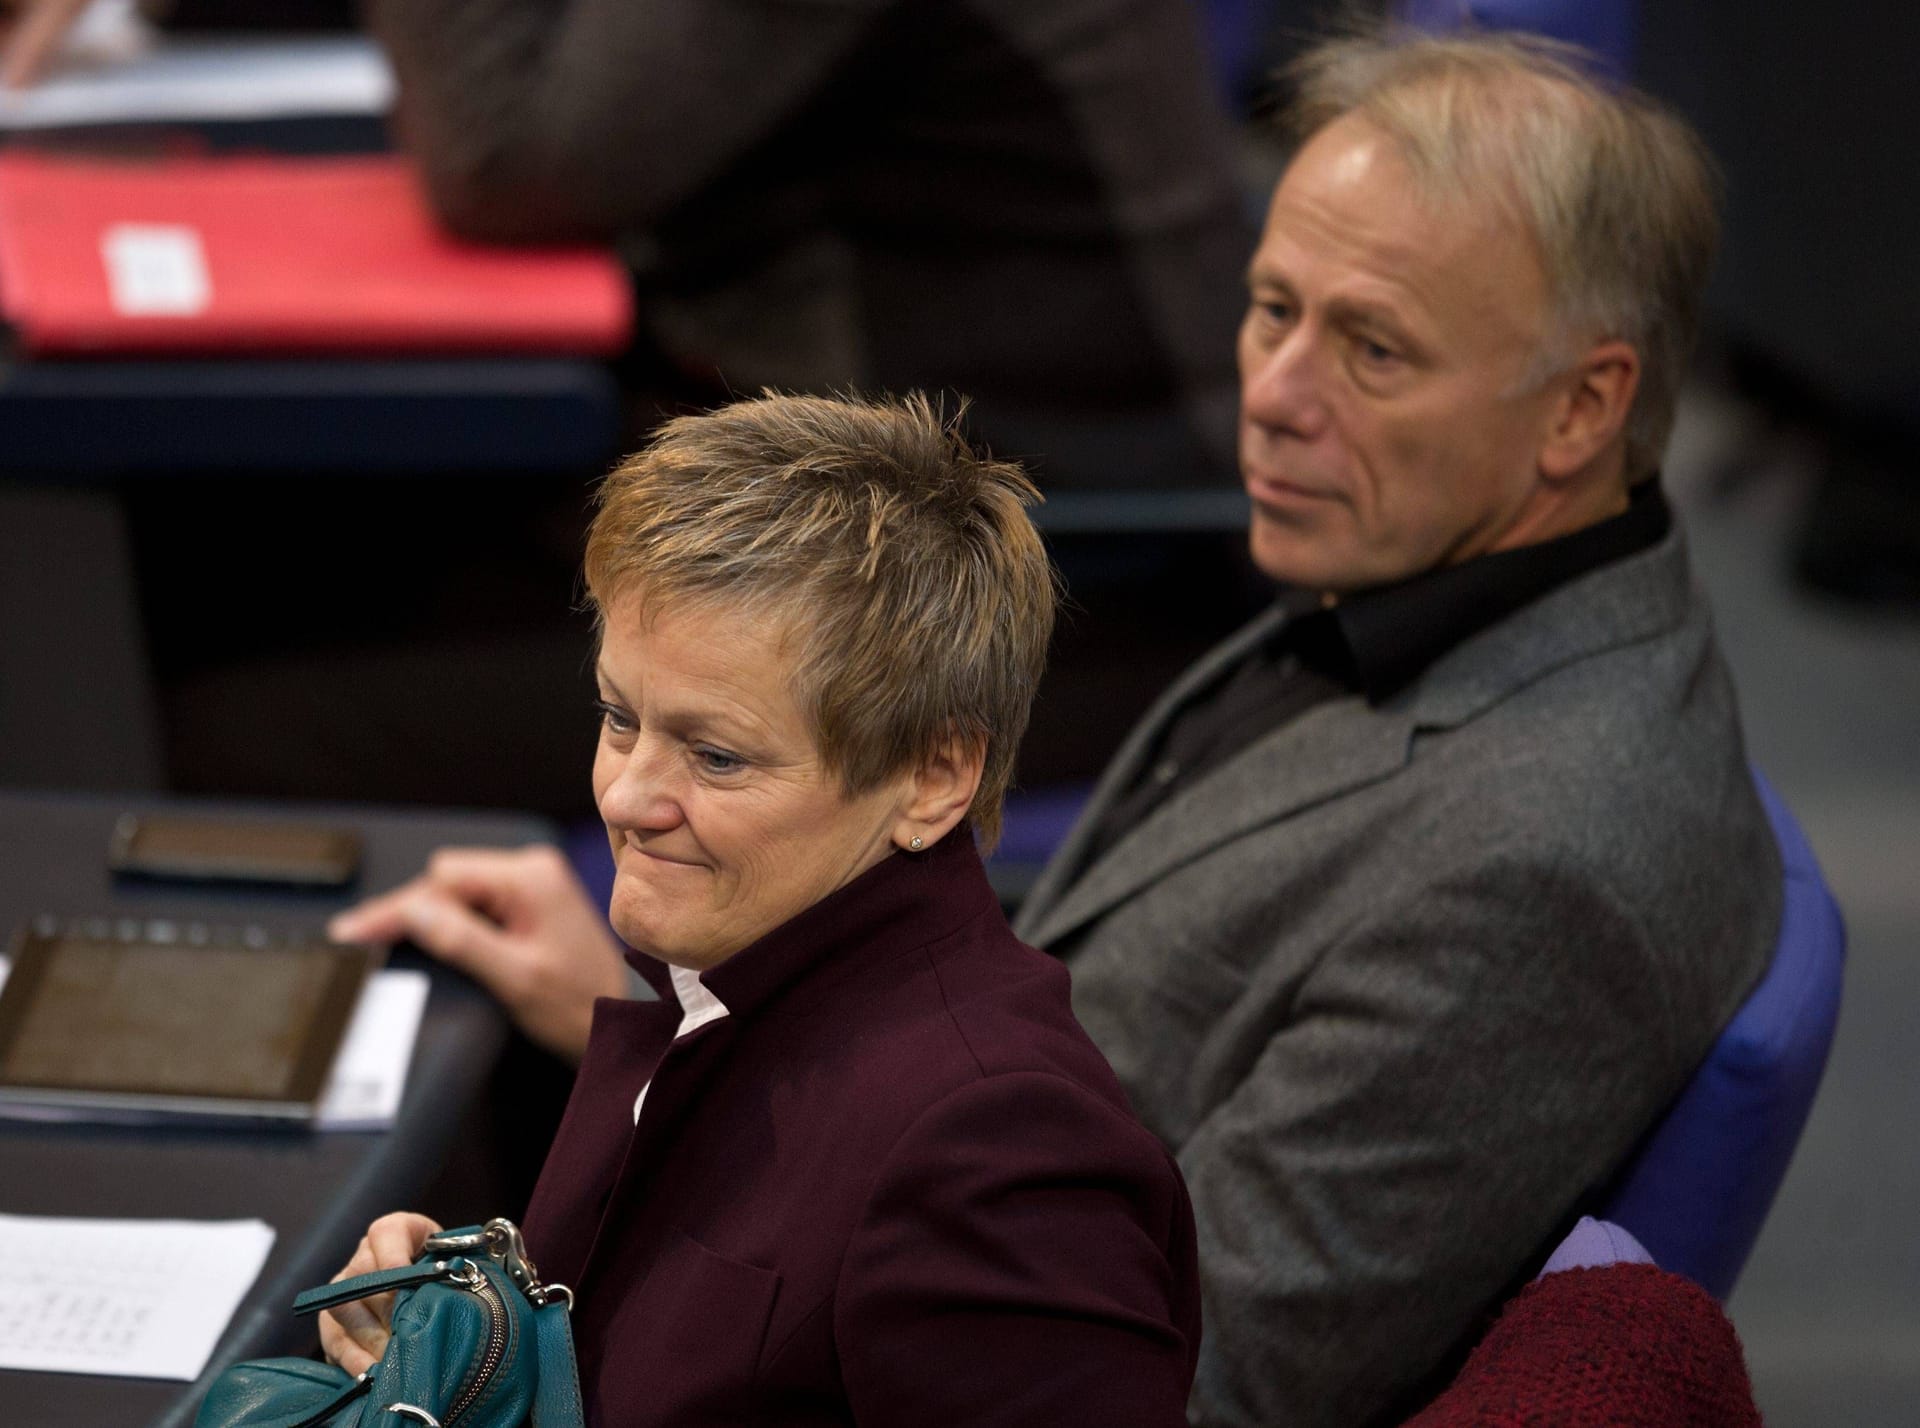 Leiteten gemeinsam die Geschicke der Fraktion: Renate Künast und Jürgen Trittin hatten von 2009 bis 2013 gemeinsam den Fraktionsvorsitz der Grünen im Bundestag inne.